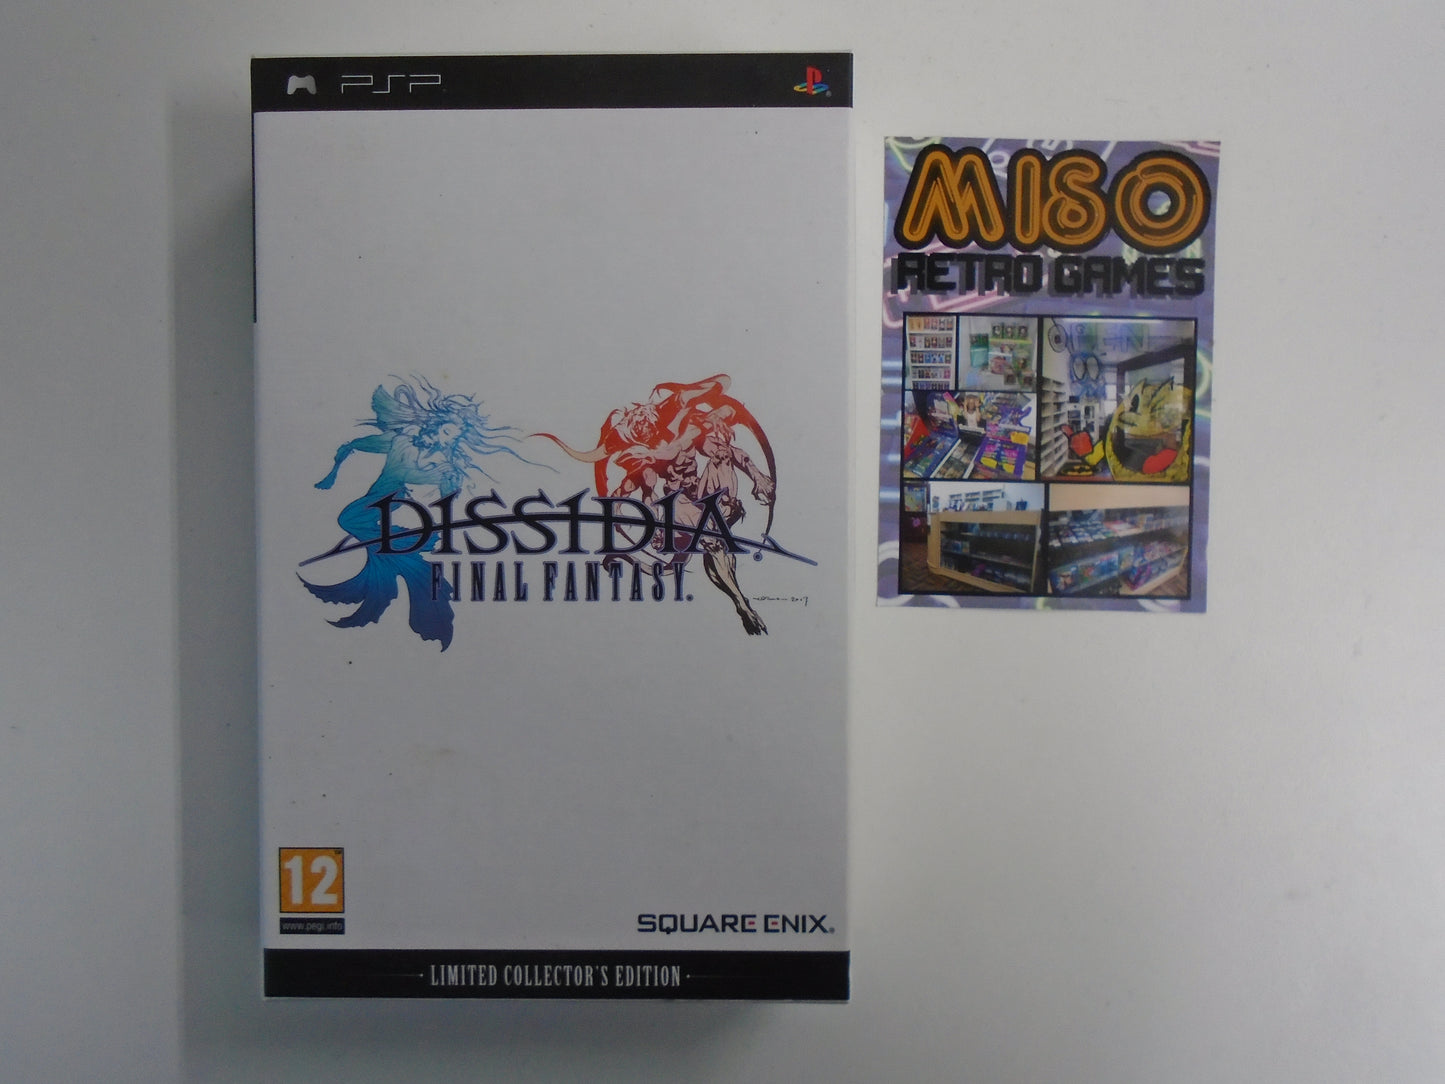 Dissidia - Final Fantasy - Collectors Edition - complete